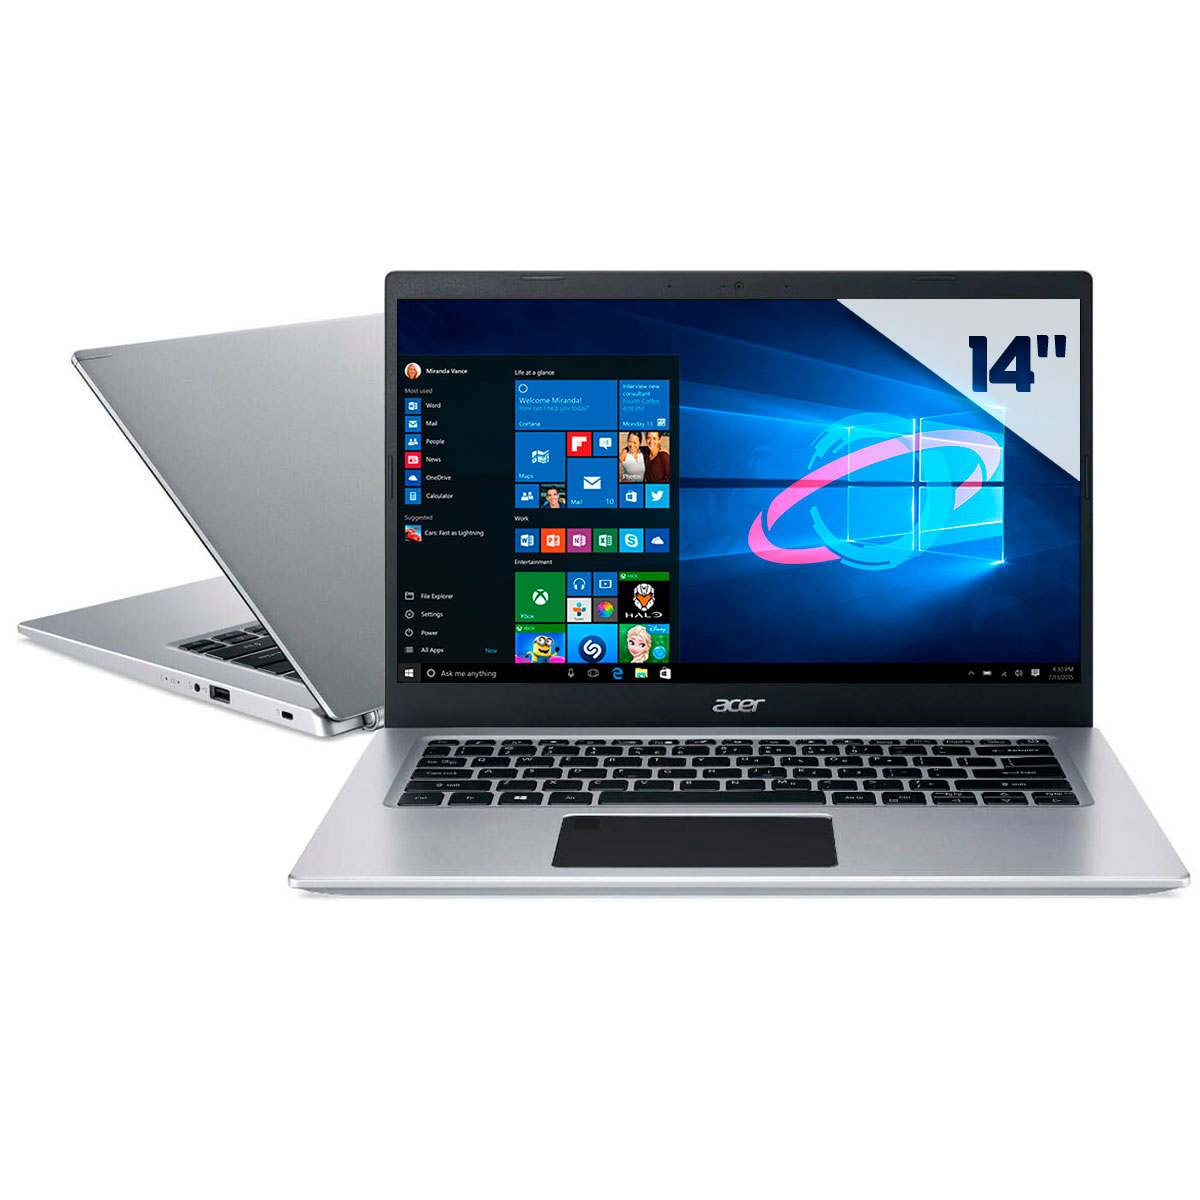 Notebook Acer Aspire A514-53-5239 - Intel i5 1035G1, RAM 8GB, SSD 256GB, Tela 14